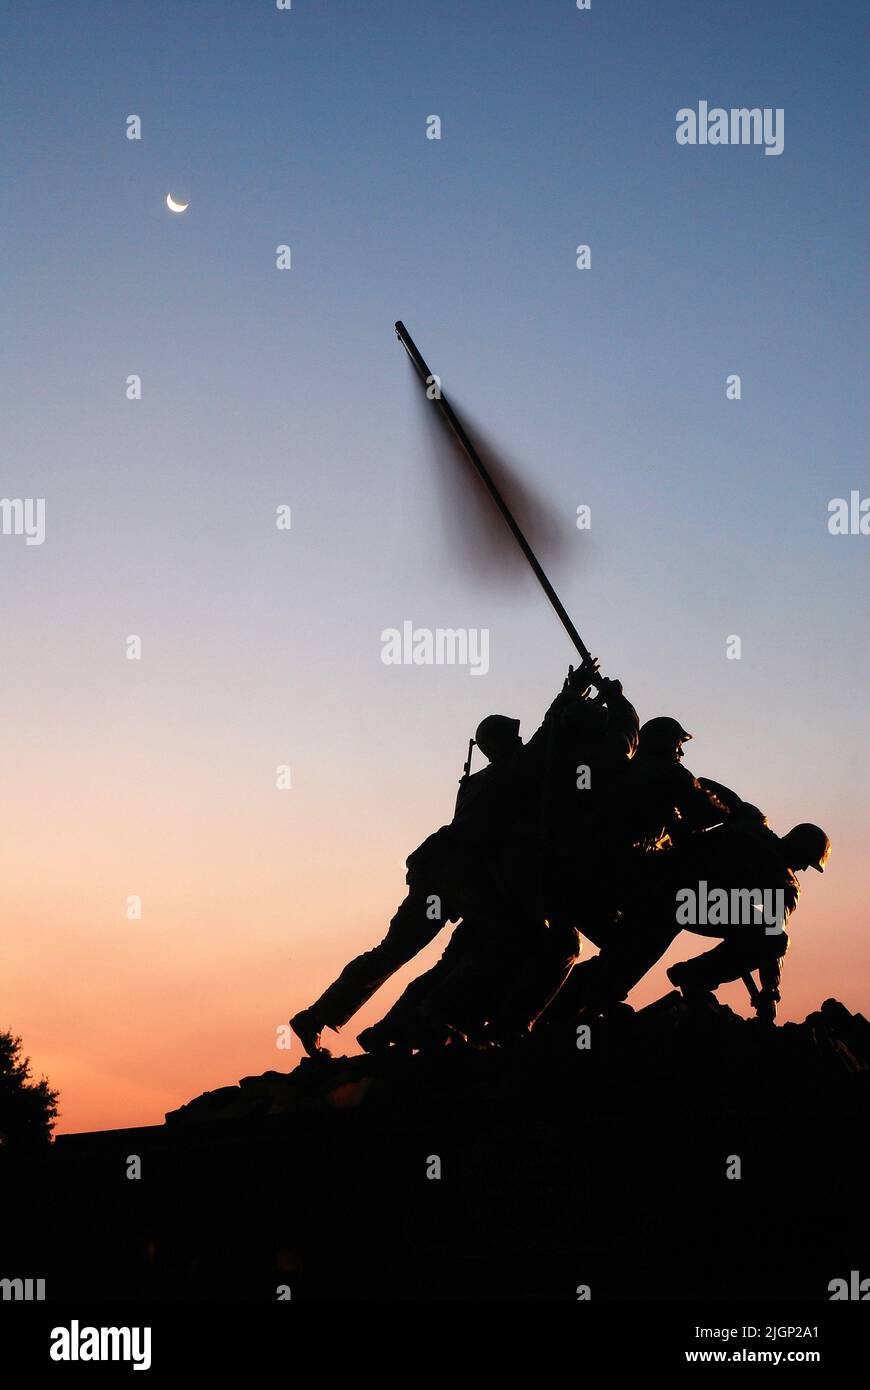 El Memorial del Cuerpo de Infantería de Marina de los Estados Unidos, en Arlington, Virginia, Washington DC, representa el alzamiento de la bandera en Iwo Jima, recreando la famosa foto Foto de stock